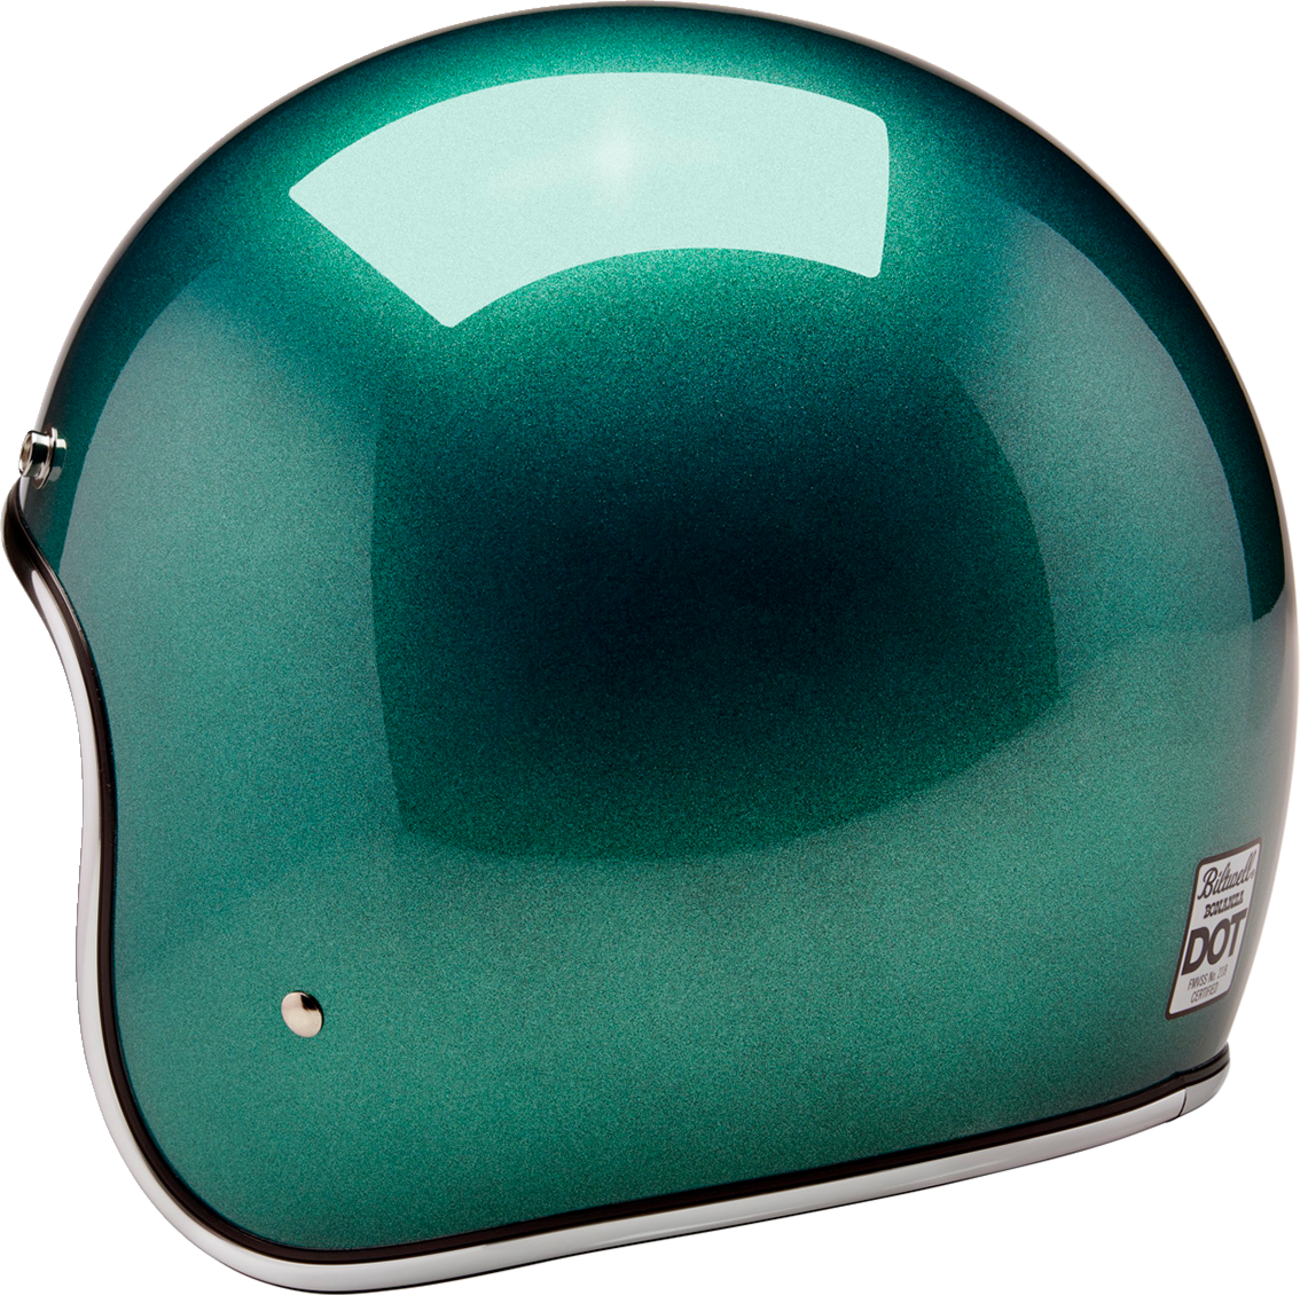 BILTWELL Bonanza Helmet - Metallic Catalina Green - Small 1001-358-202